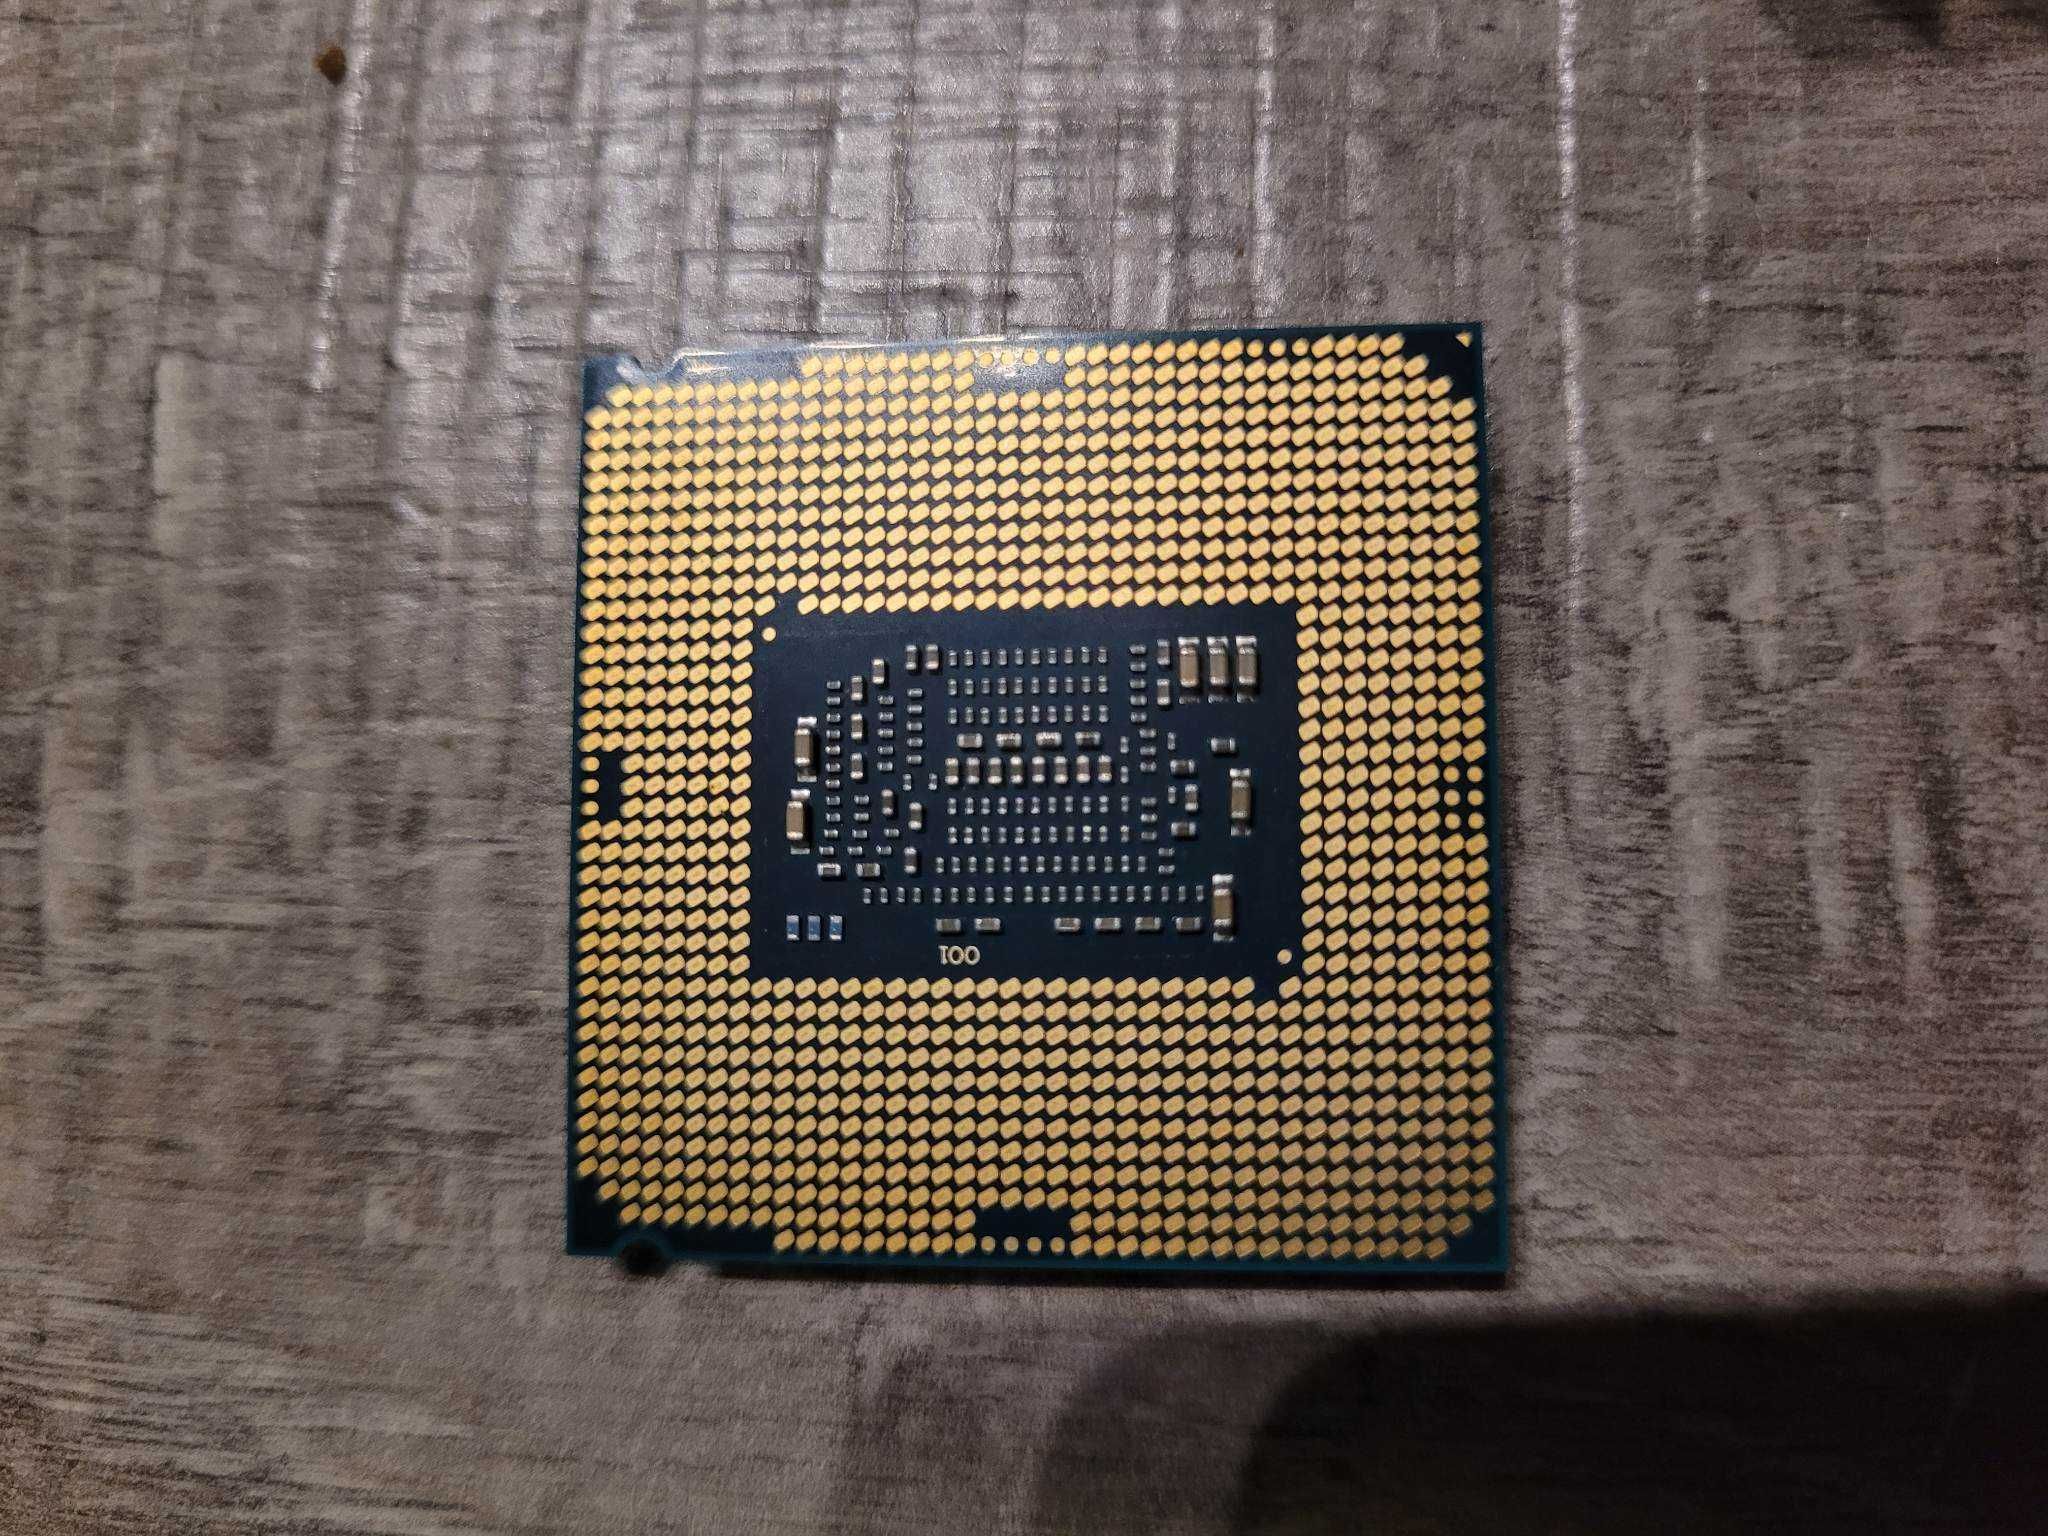 Procesor Intel Pentium G4560 3.5GHz + chłodzenie